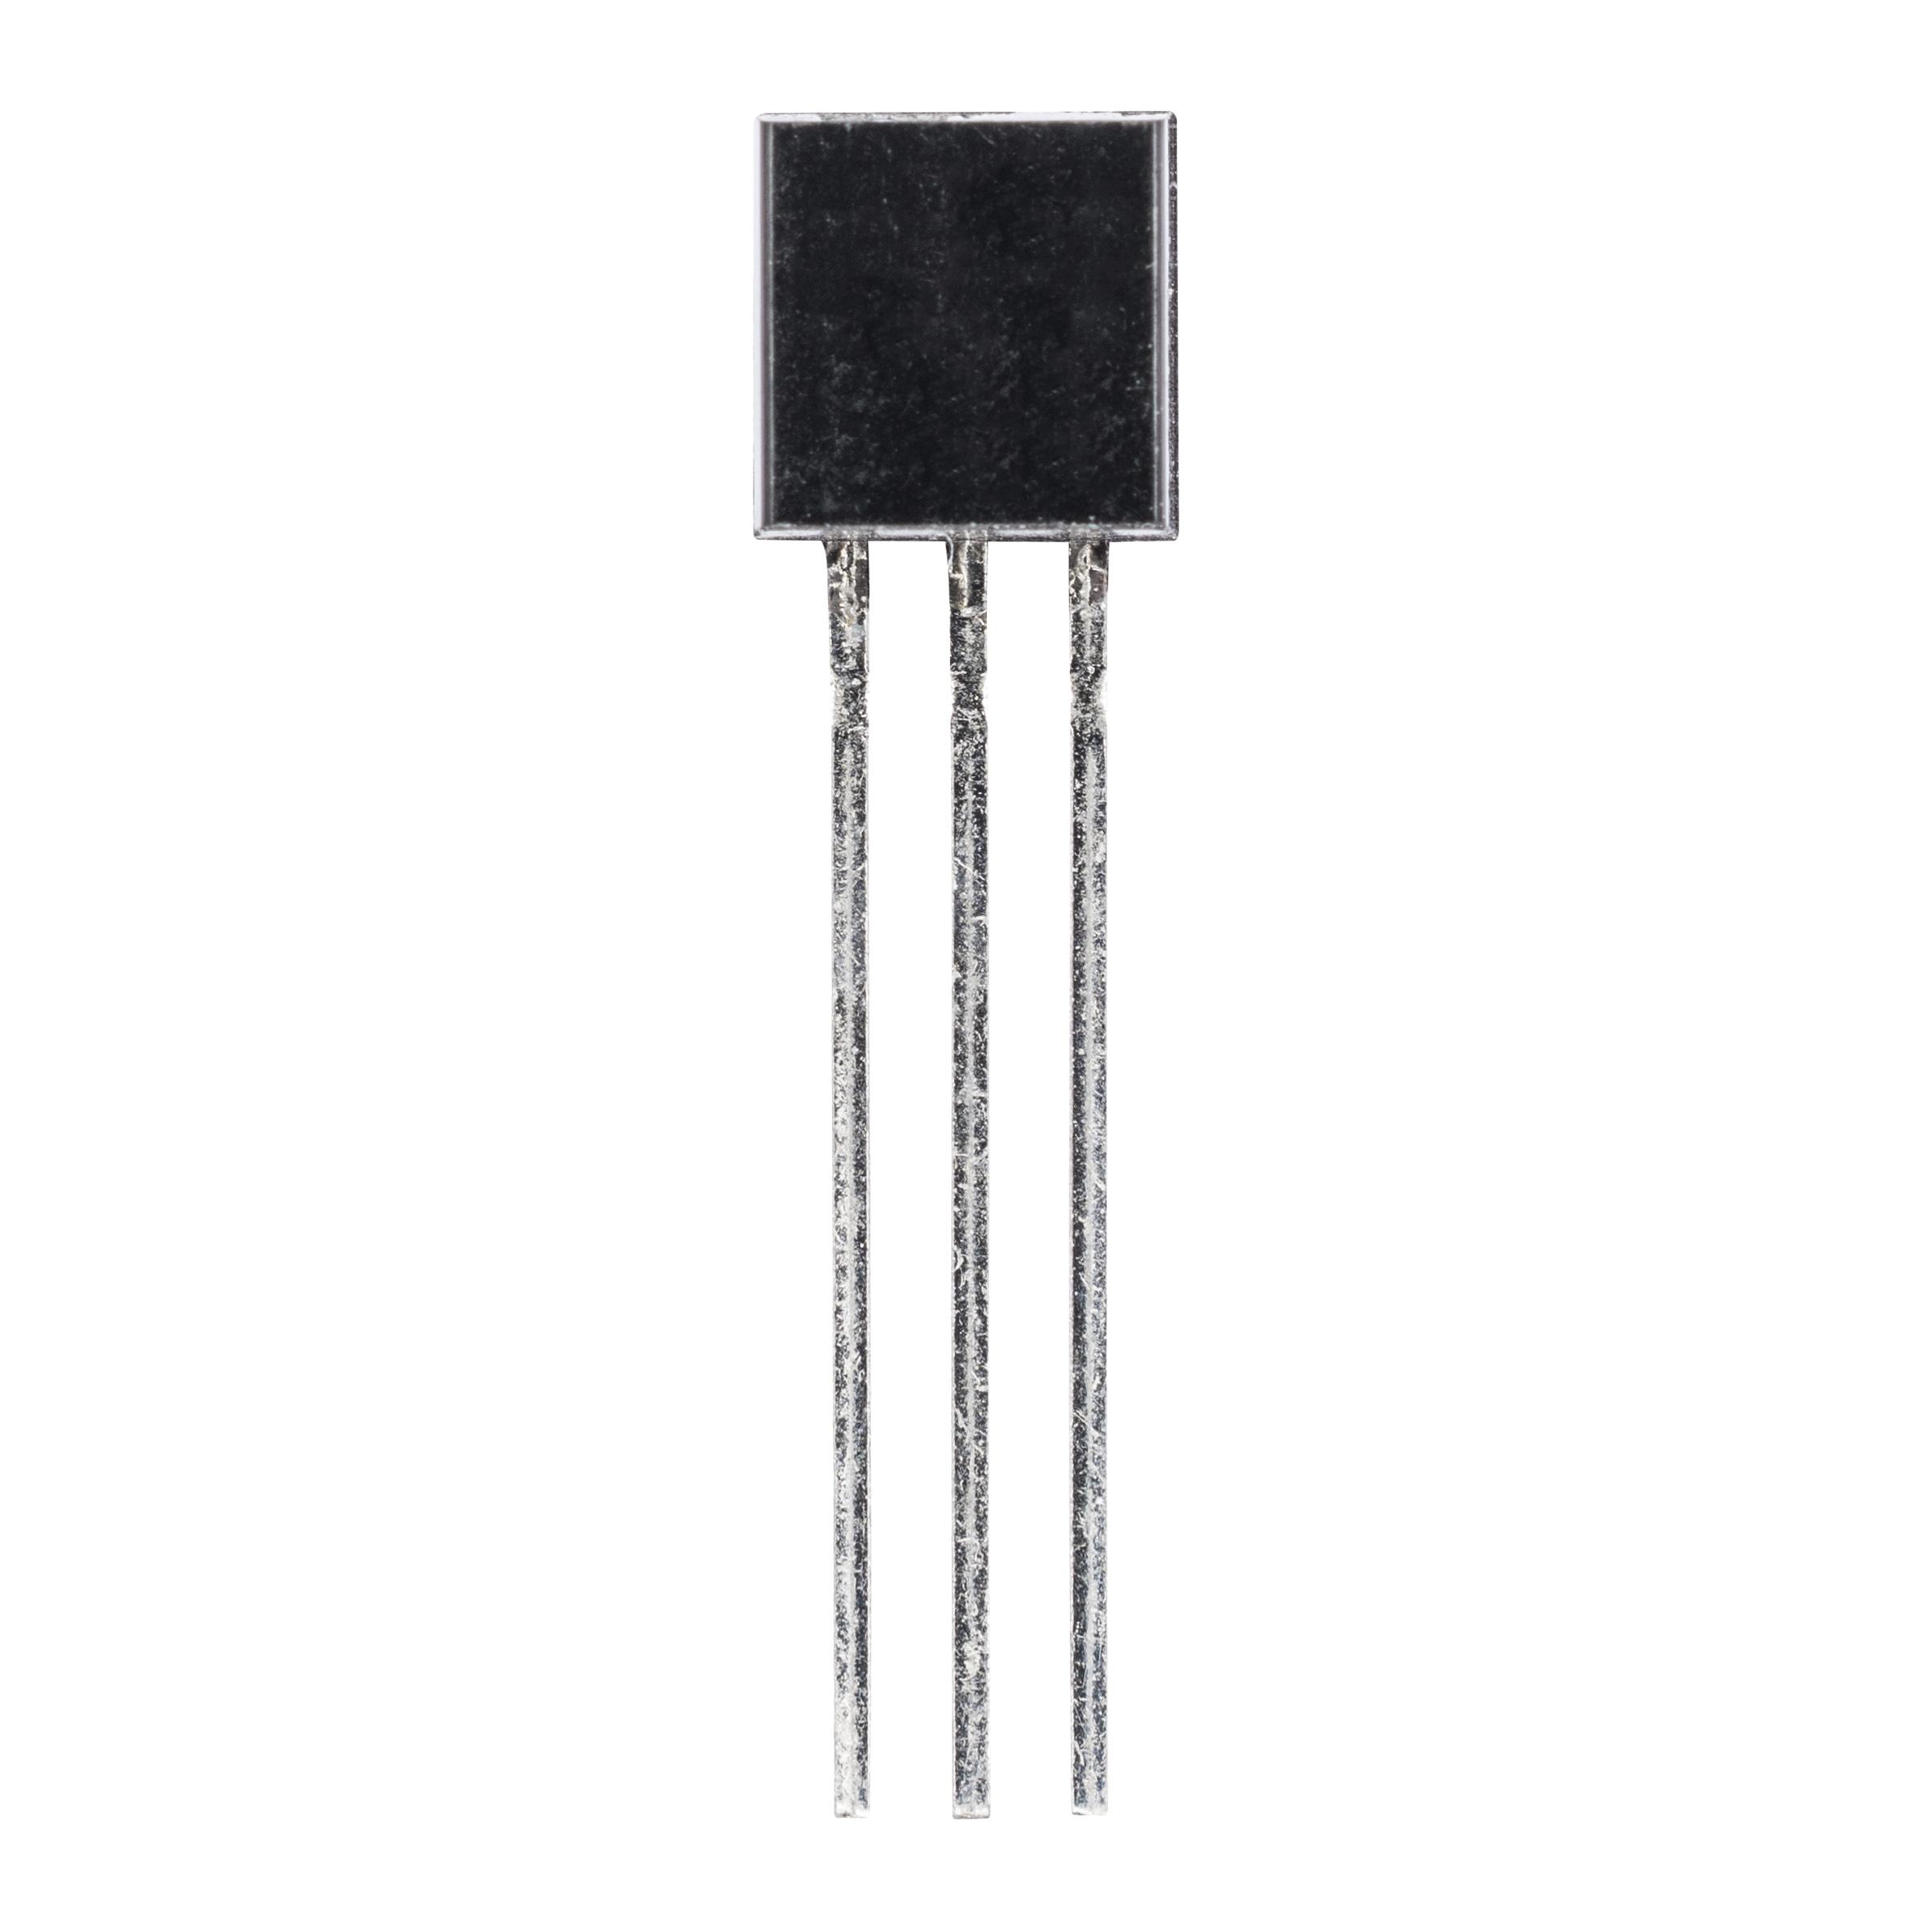 2N6517 (транзистор биполярный NPN)